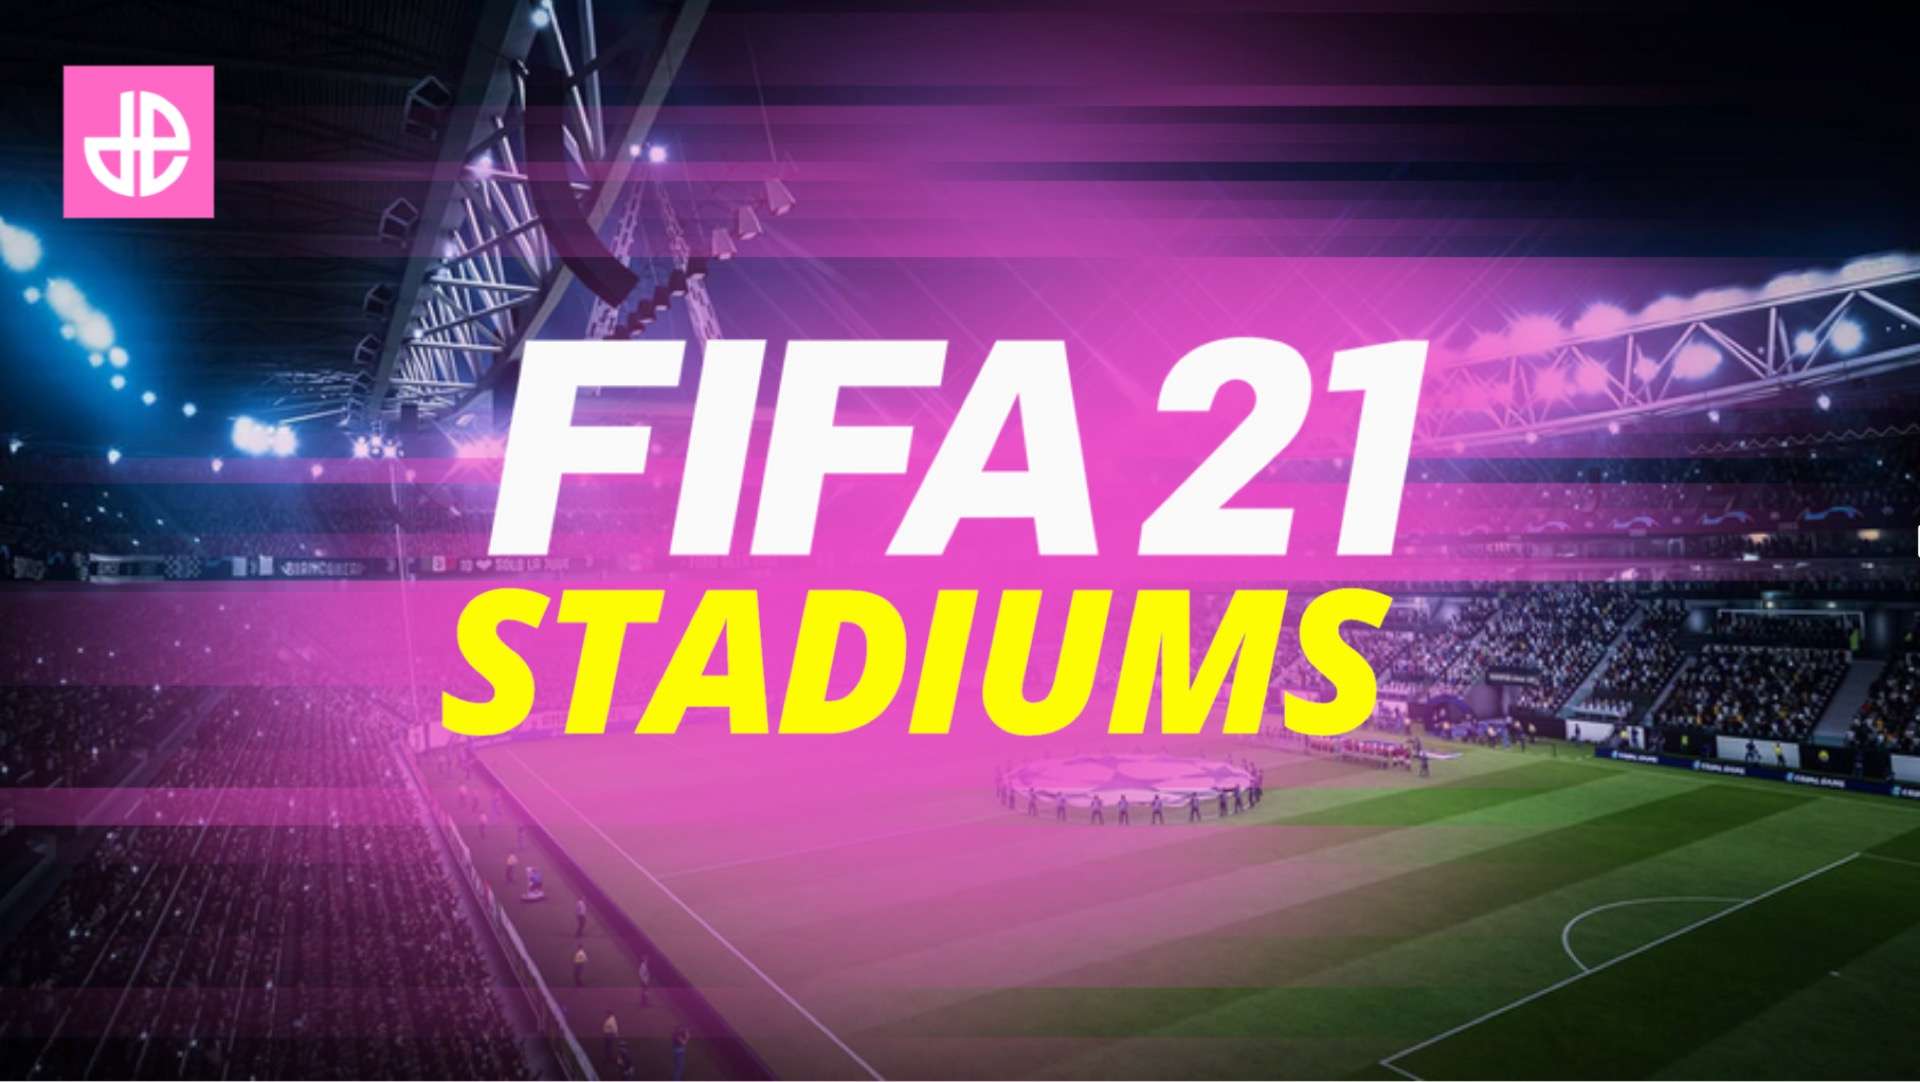 Stadium in FIFA 21